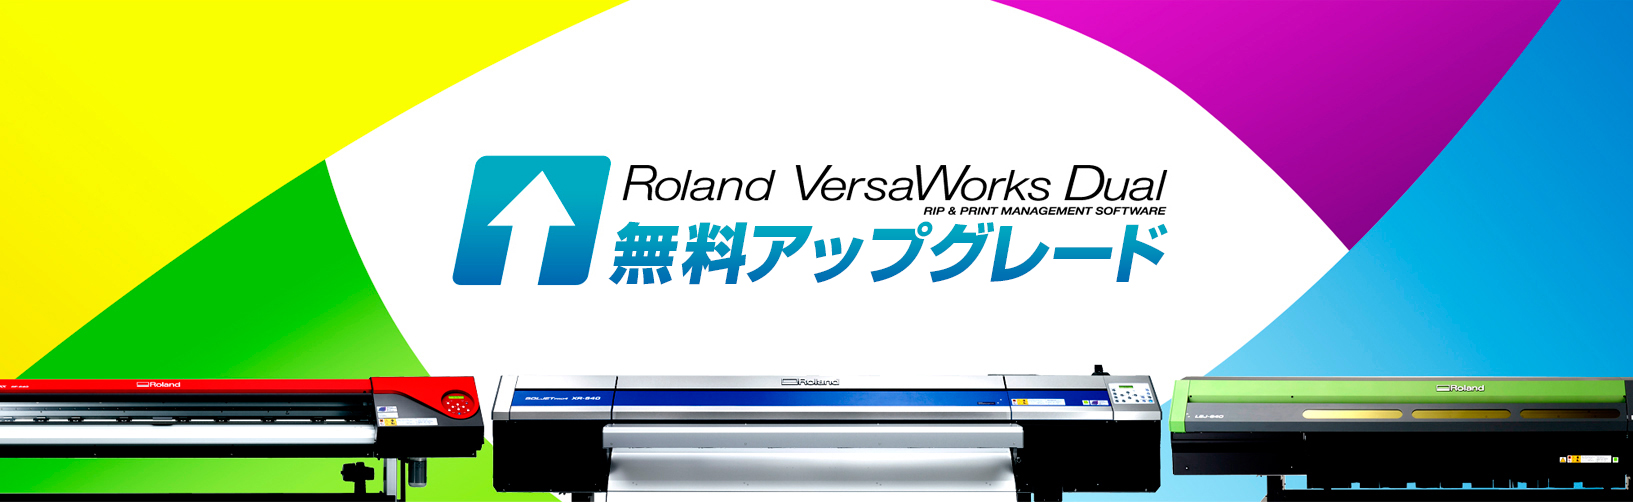 roland versaworks 5.0 download